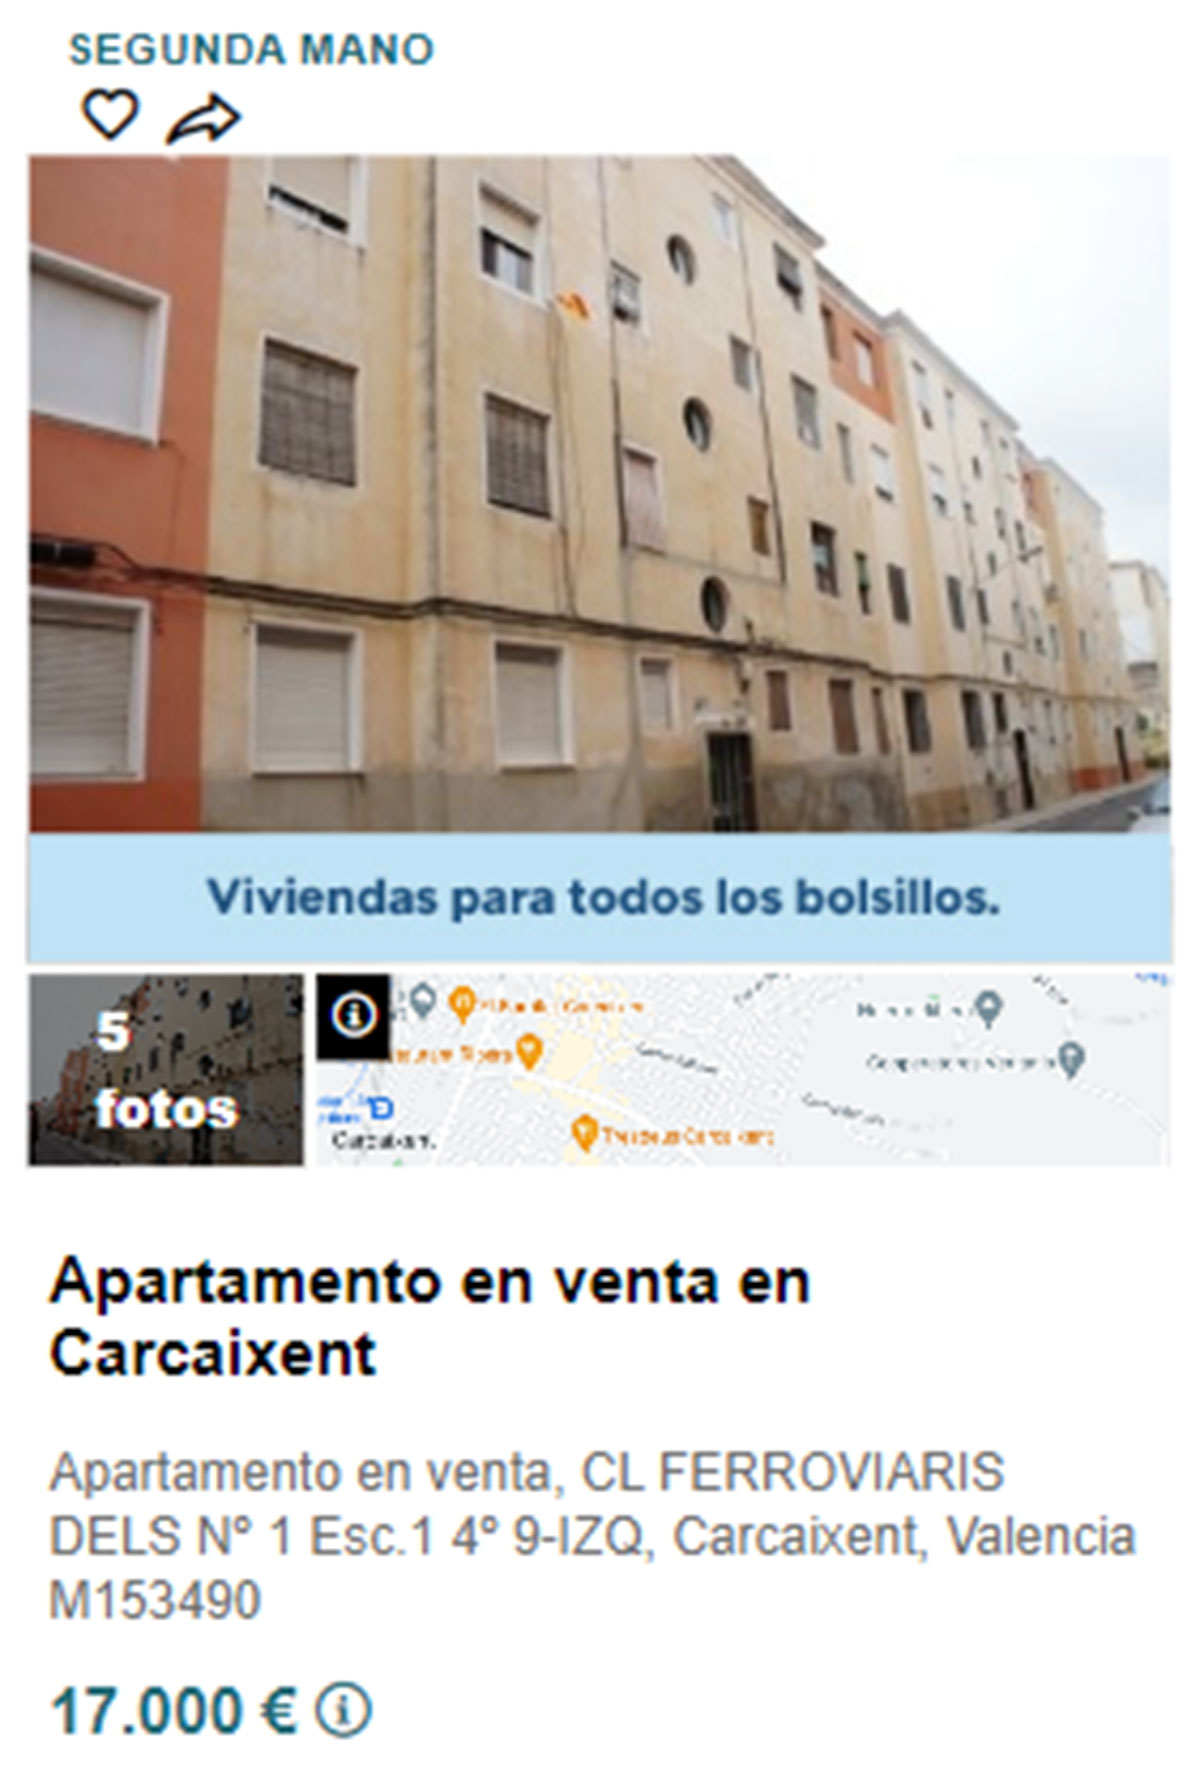 Piso en pueblos de Valencia por 17.000 euros